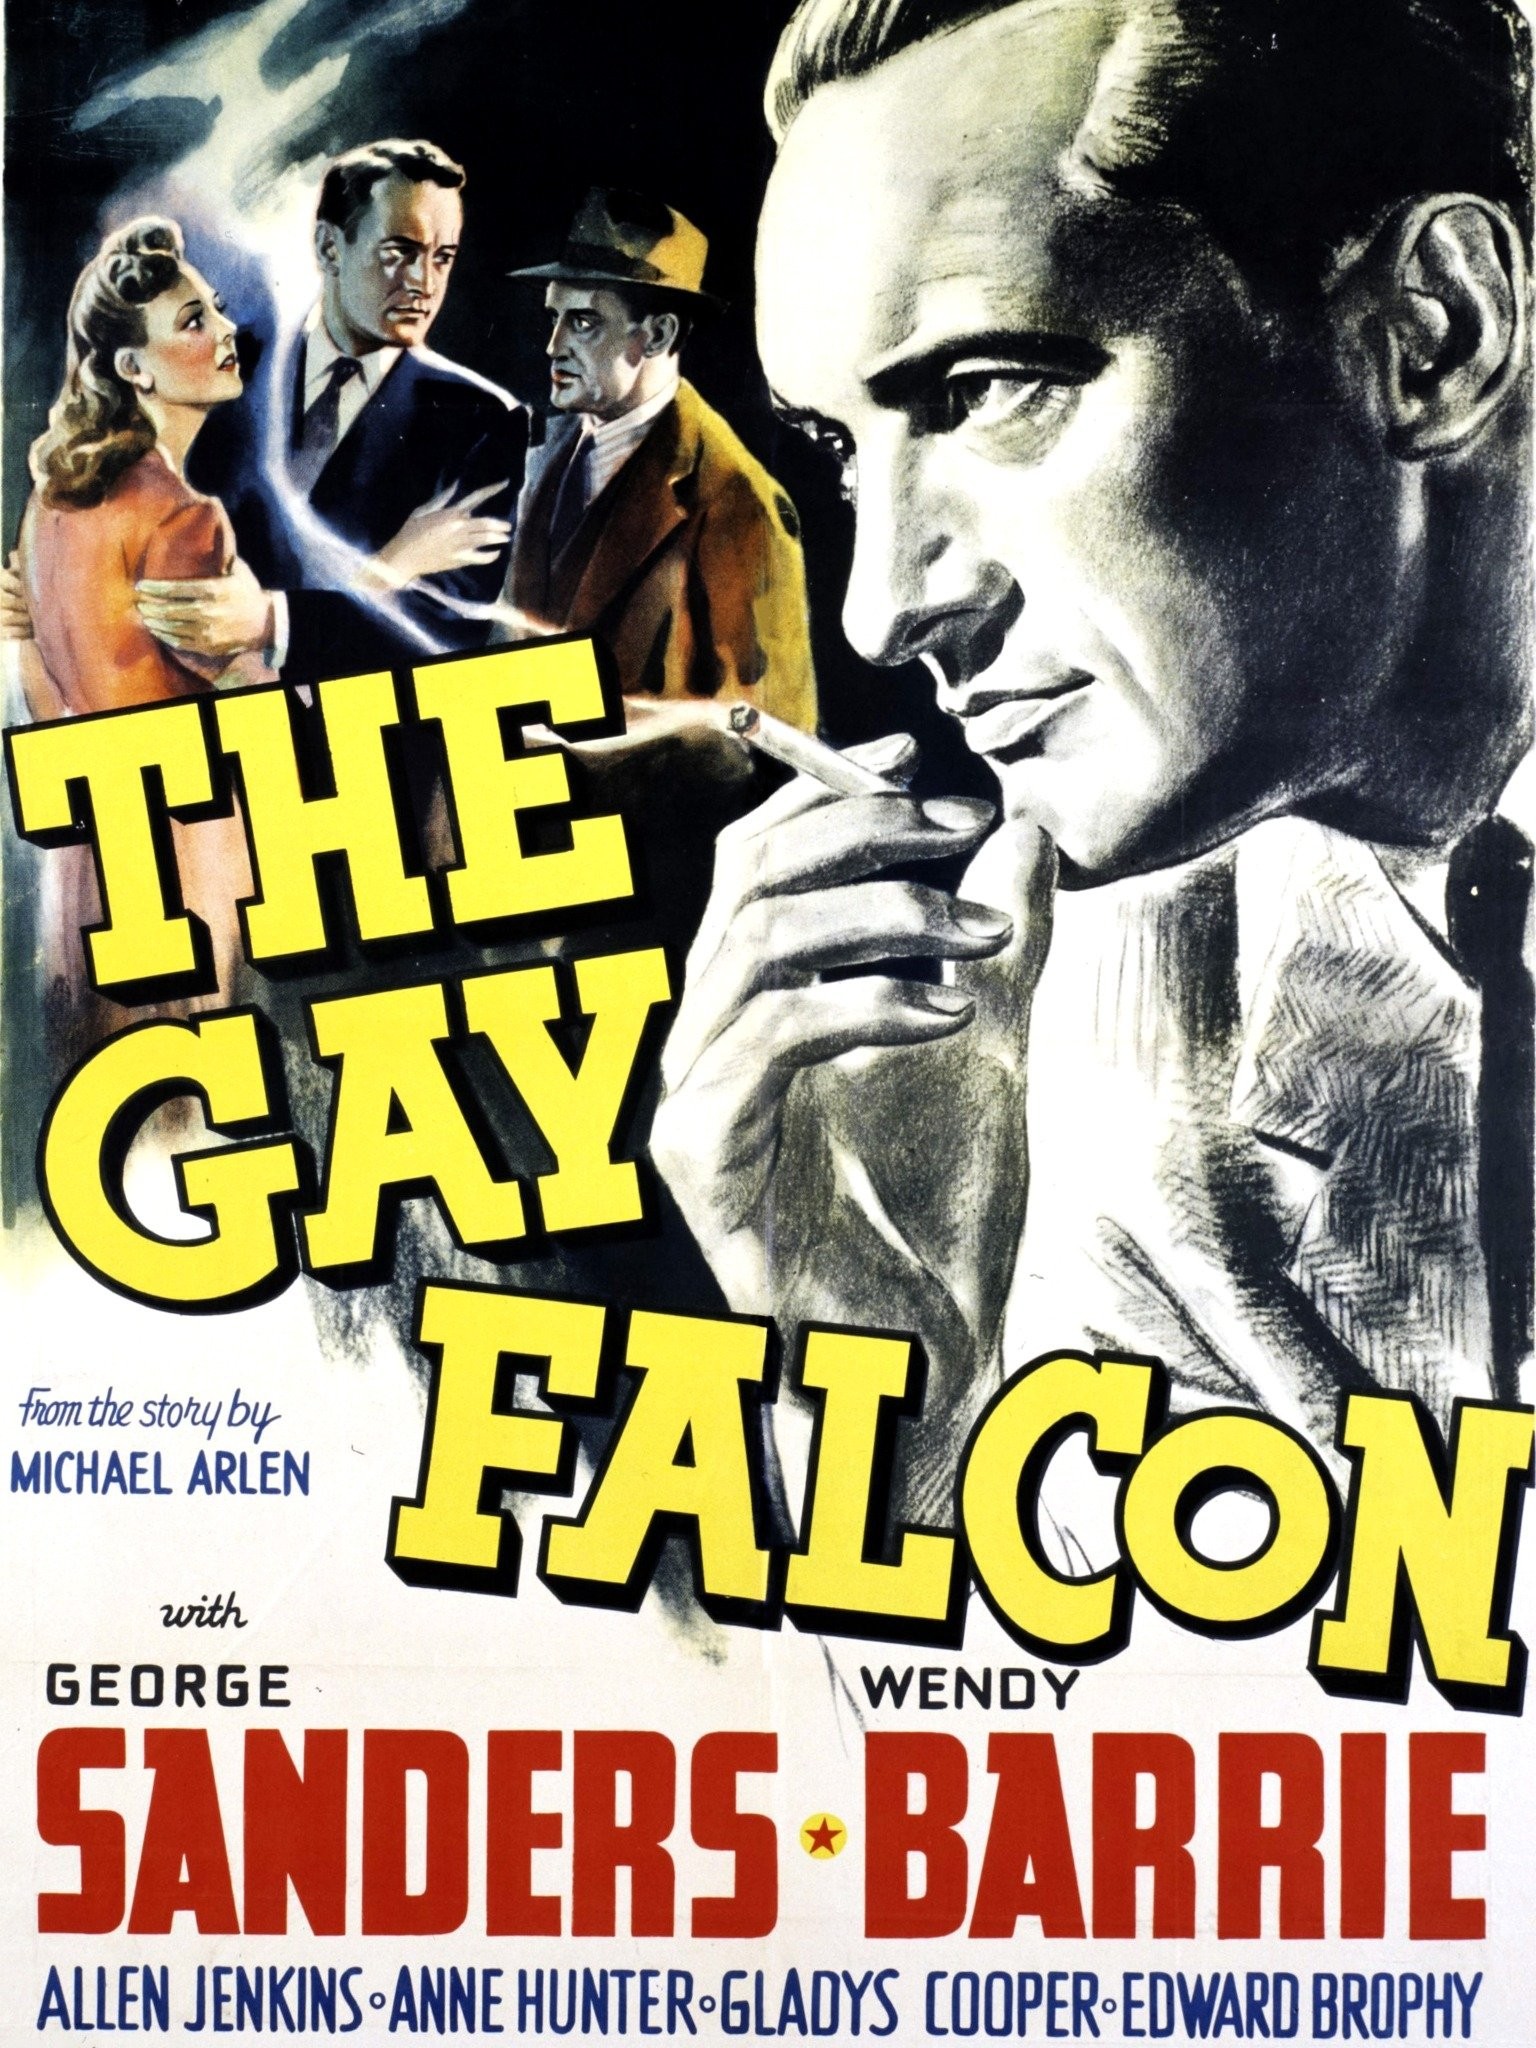 The gay falcon